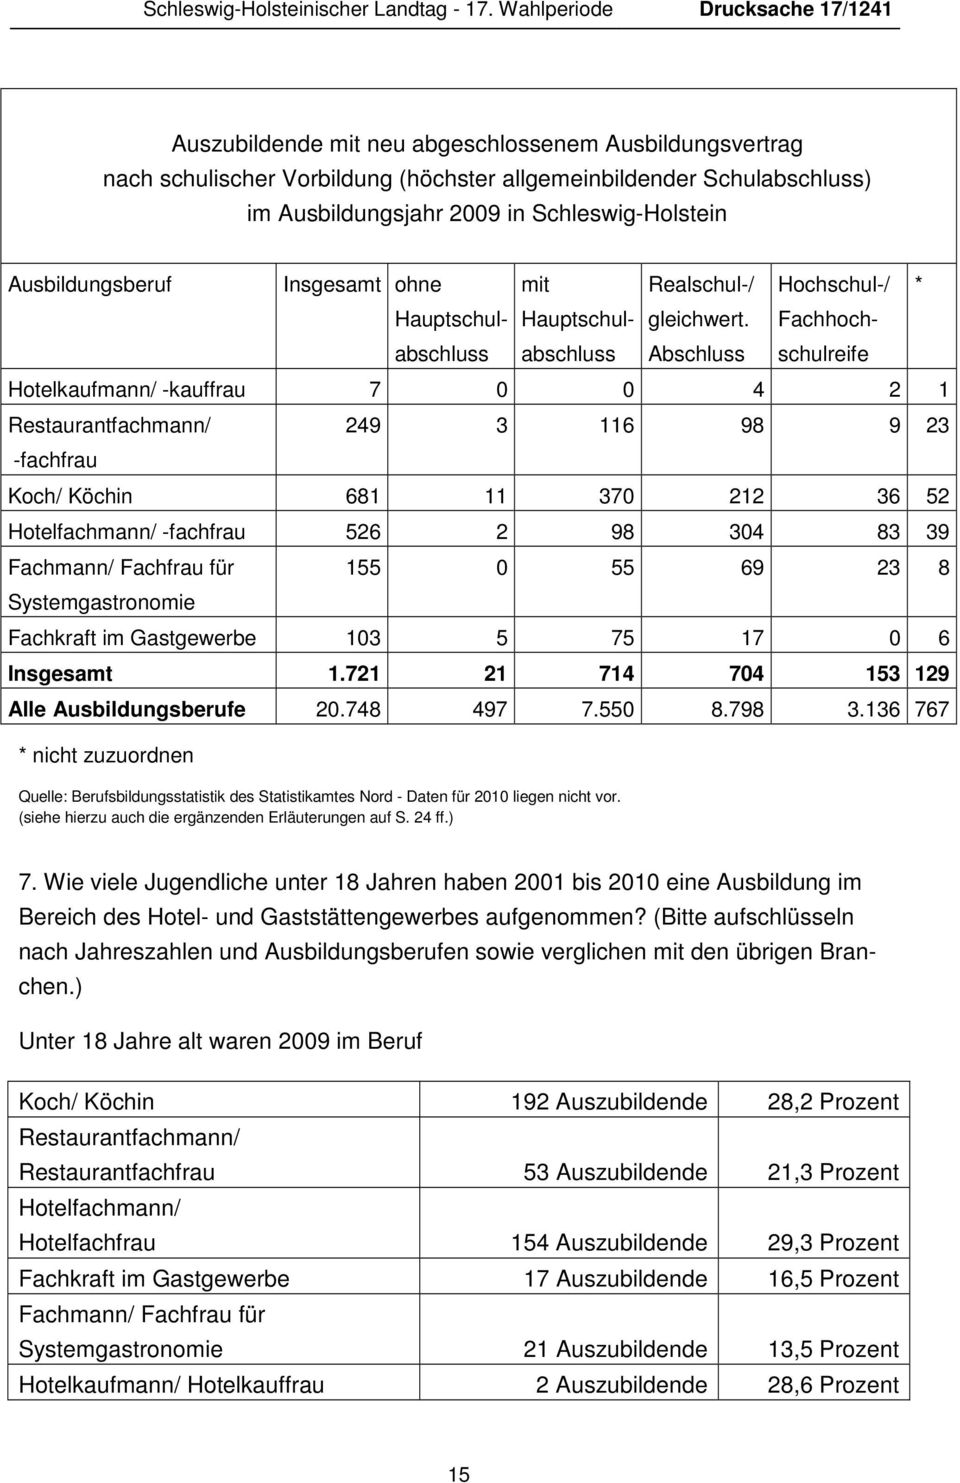 Schleswig-Holstein Ausbildungsberuf Insgesamt ohne Hauptschul- abschluss mit Hauptschul- abschluss Realschul-/ gleichwert.